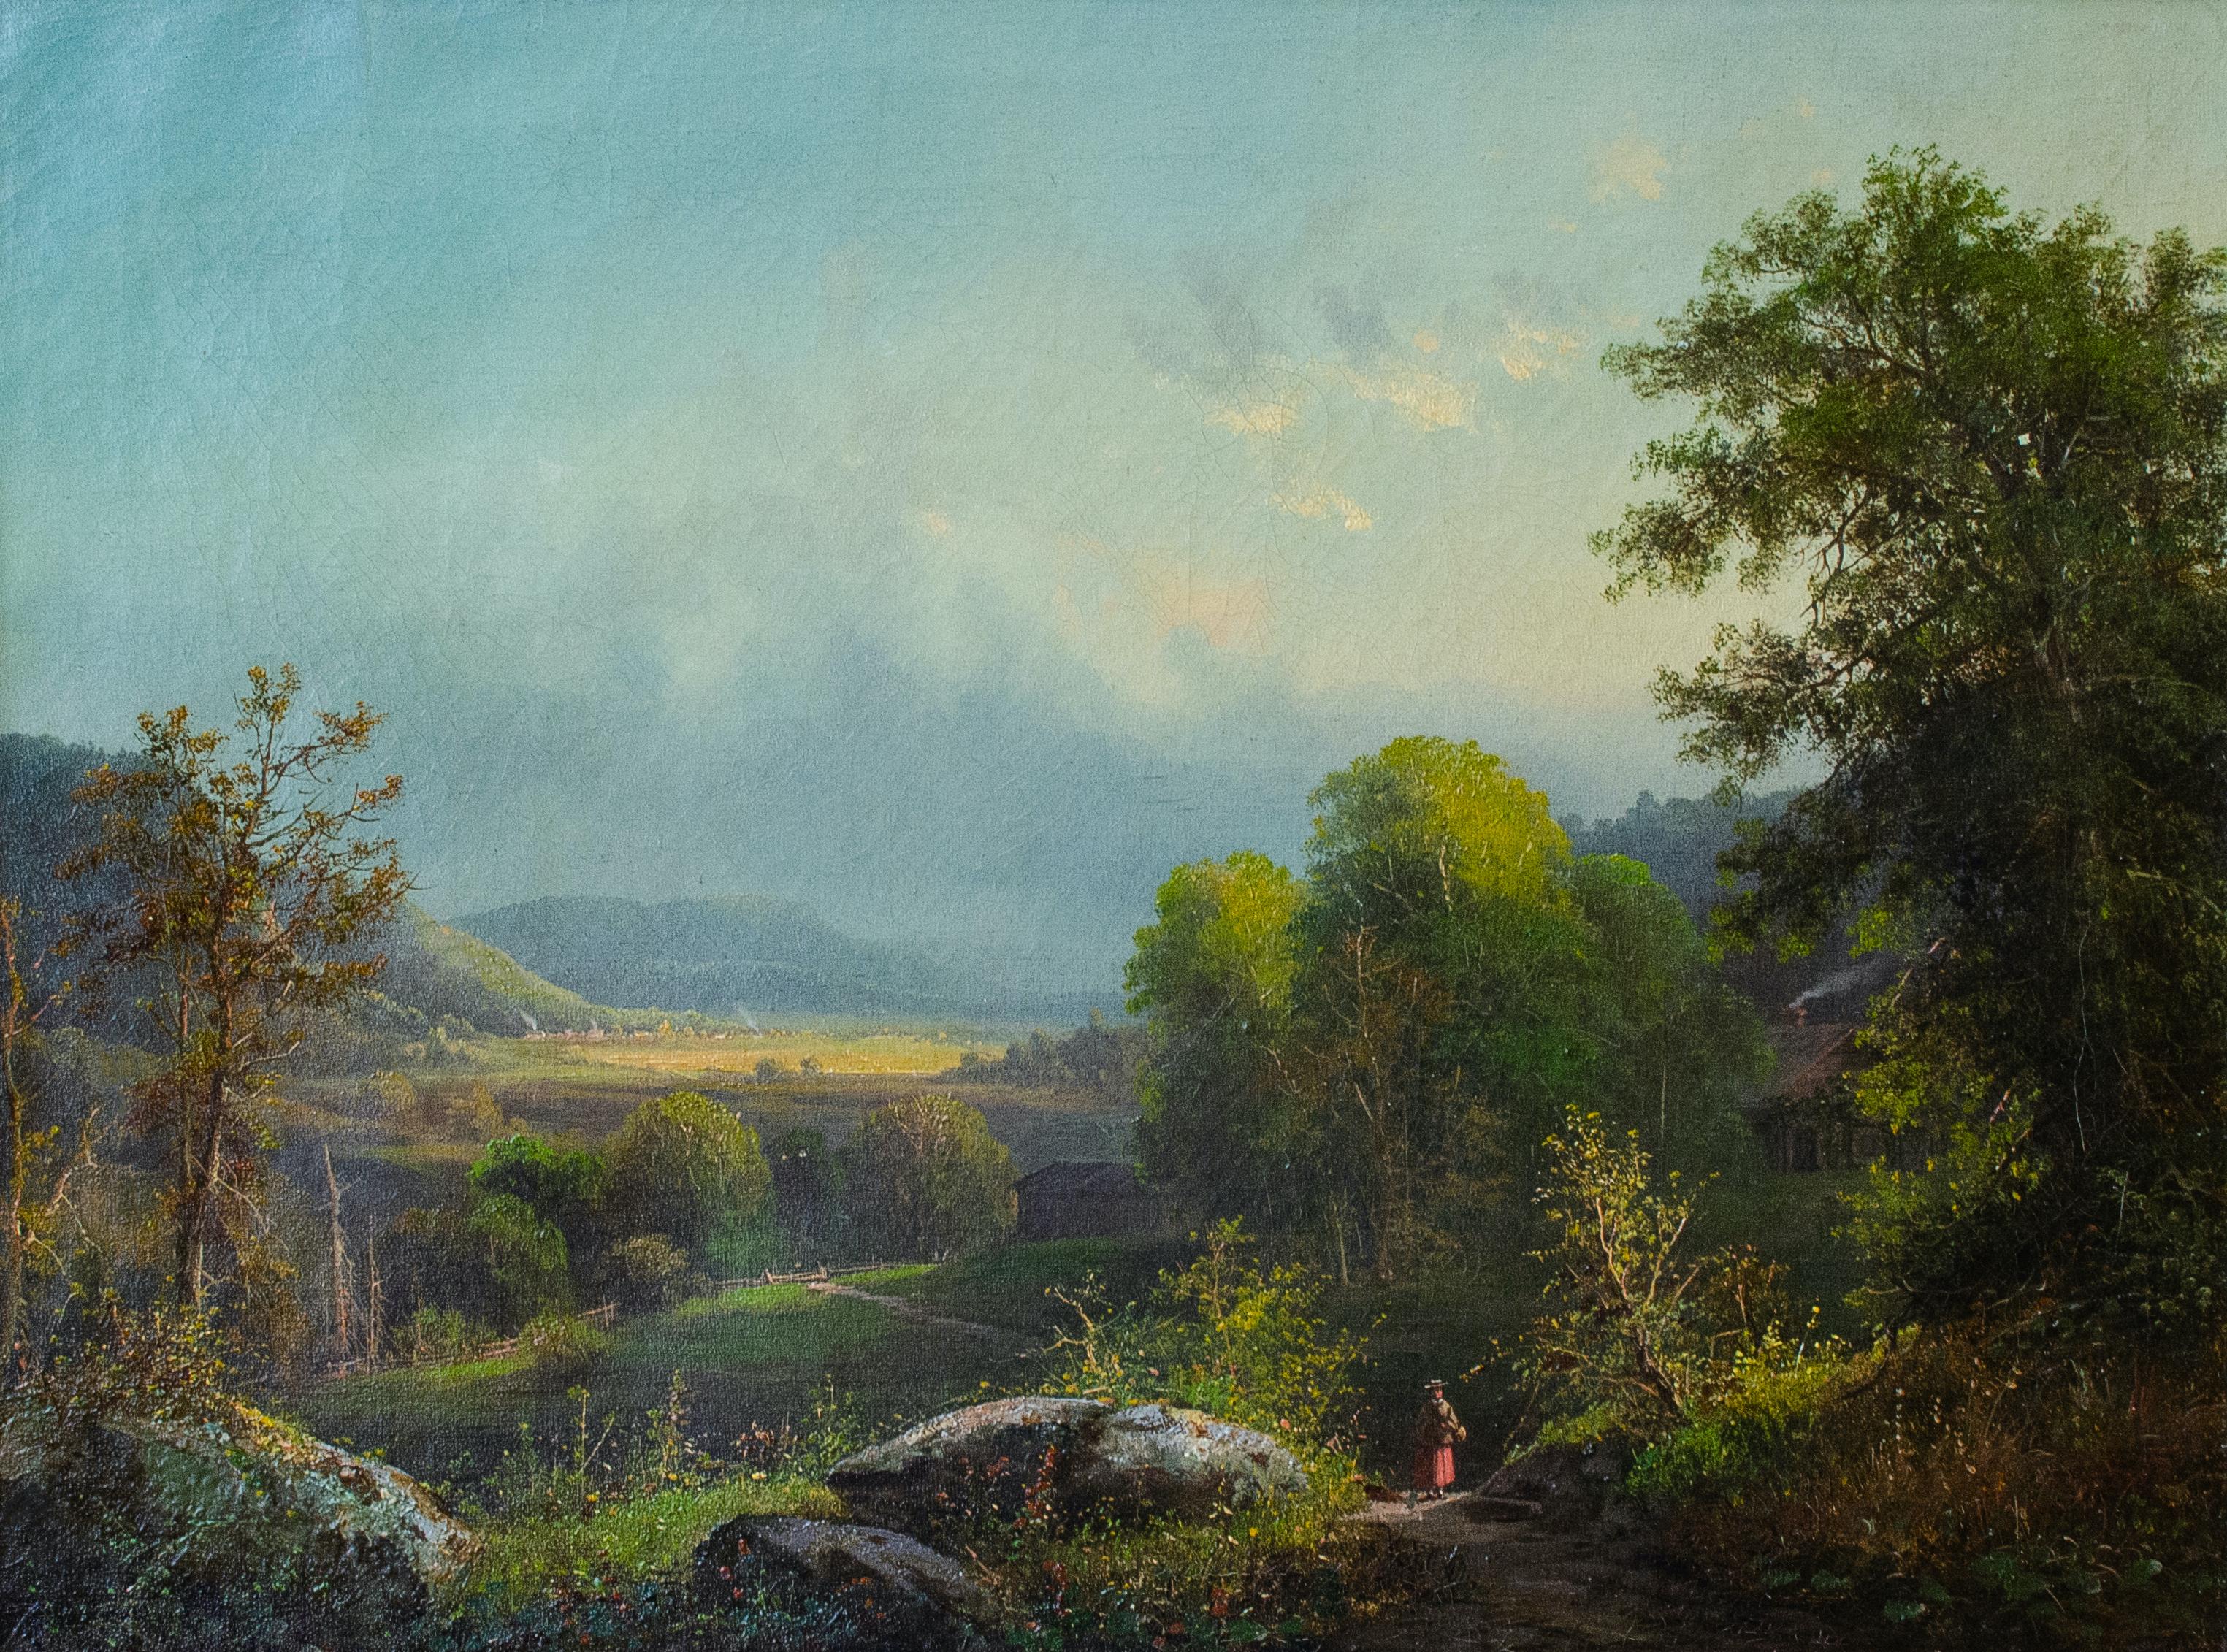 "Dover Plains" John Williamson, Hudson River School Landscape, Upstate New York